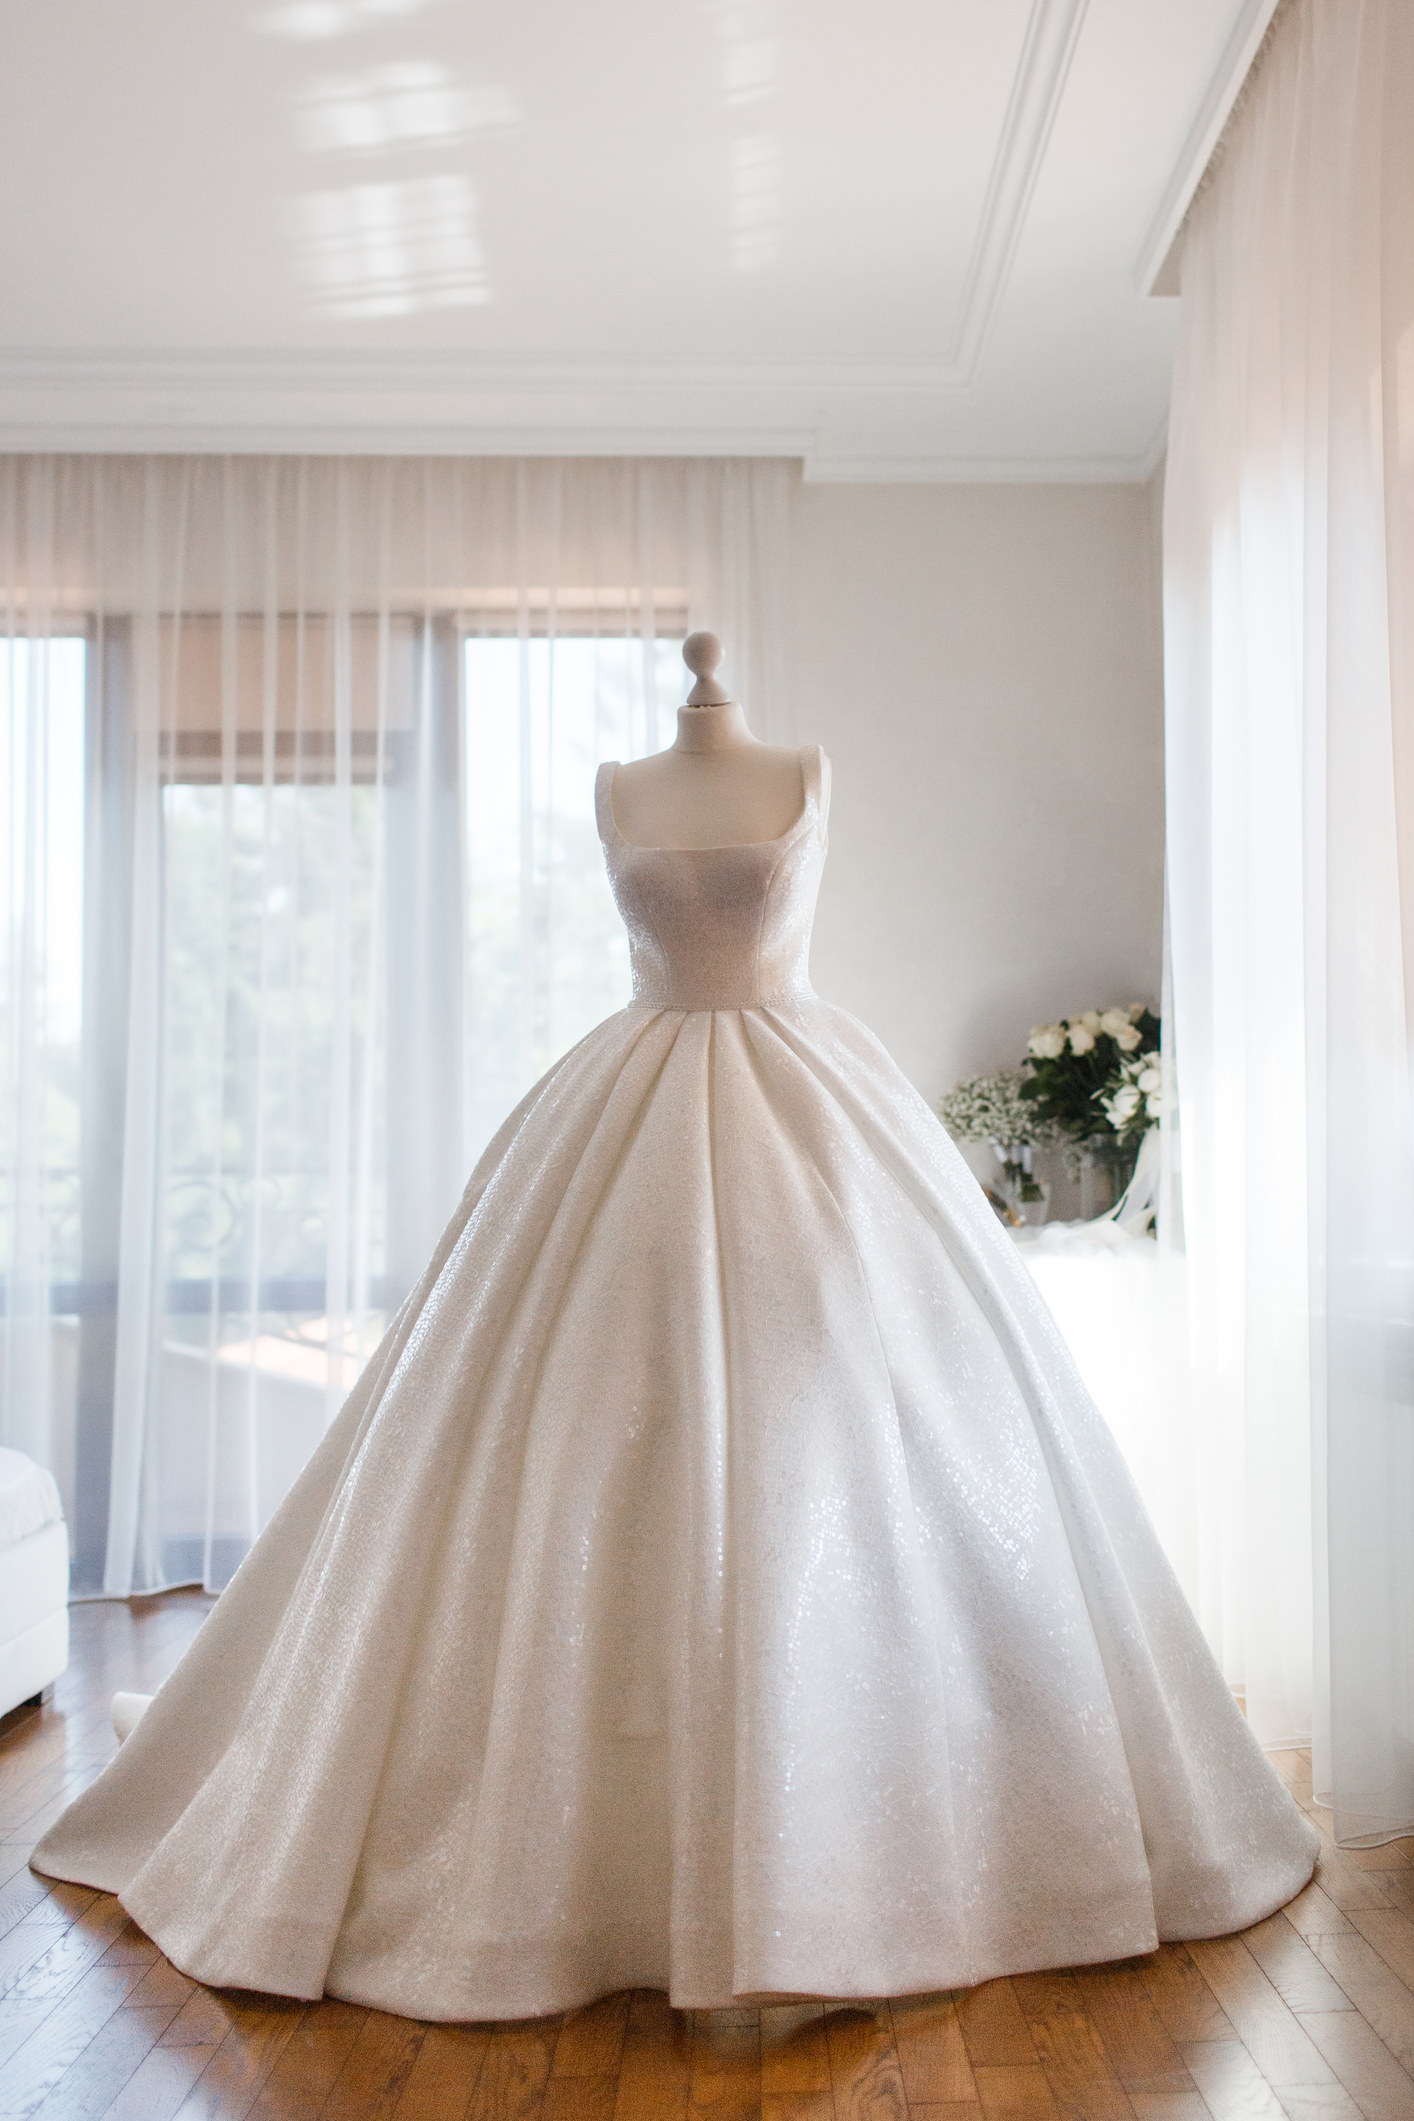 a mannequin wearing a wedding dress